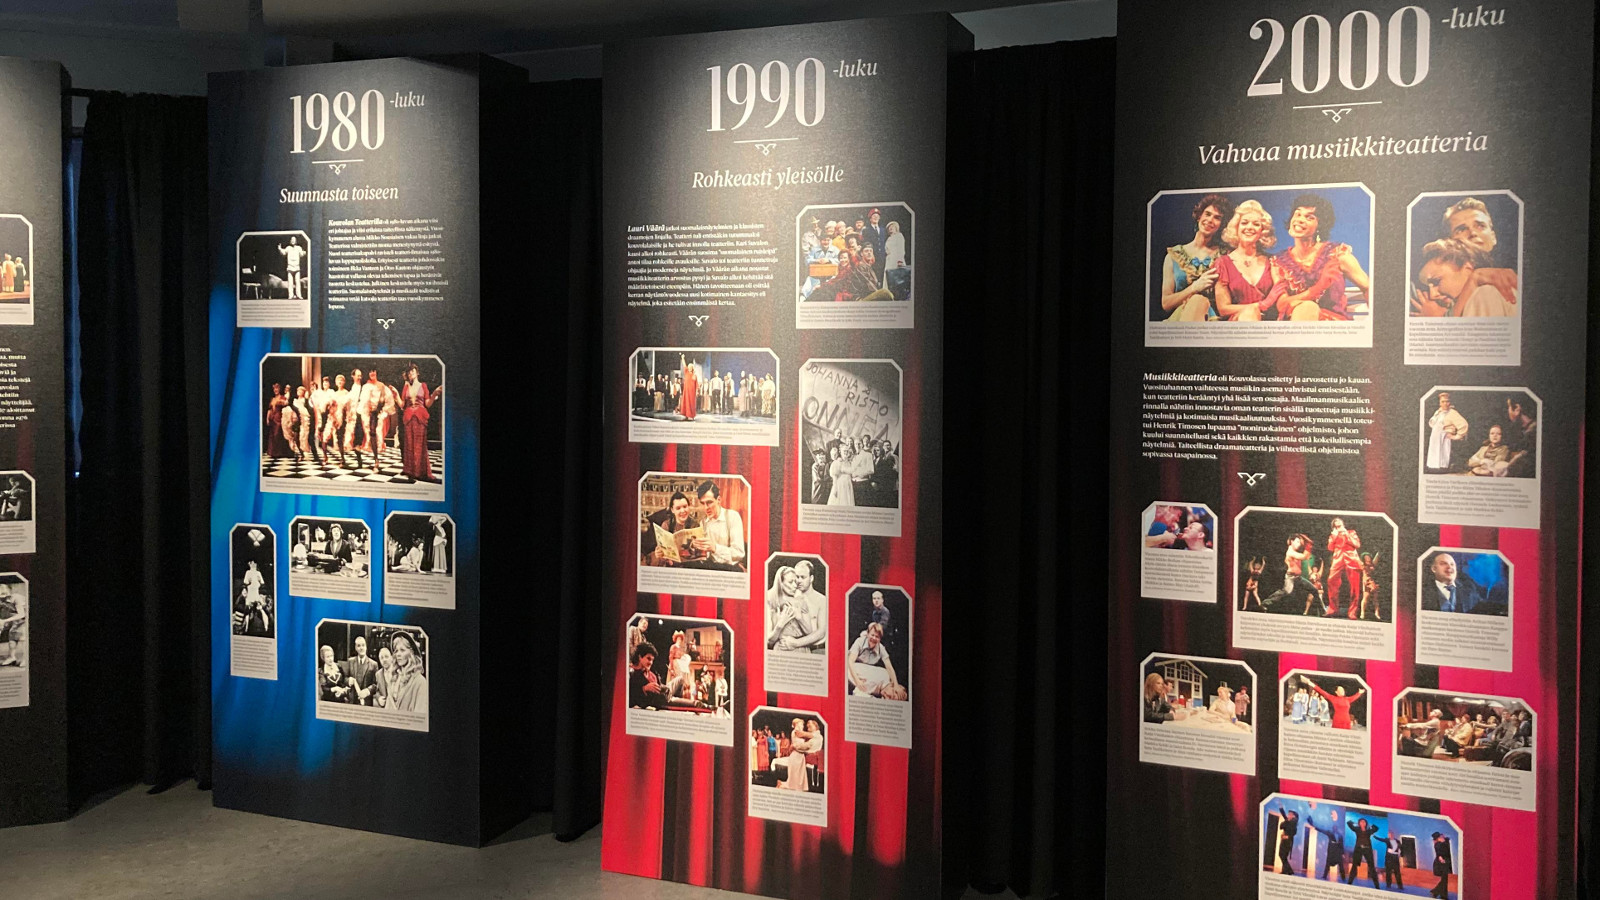 Kuvassa on kolme pystytaulua, joissa on päällä vuosiluvut 1980, 1990 ja 2000. Kaikissa  on alla valokuvia.